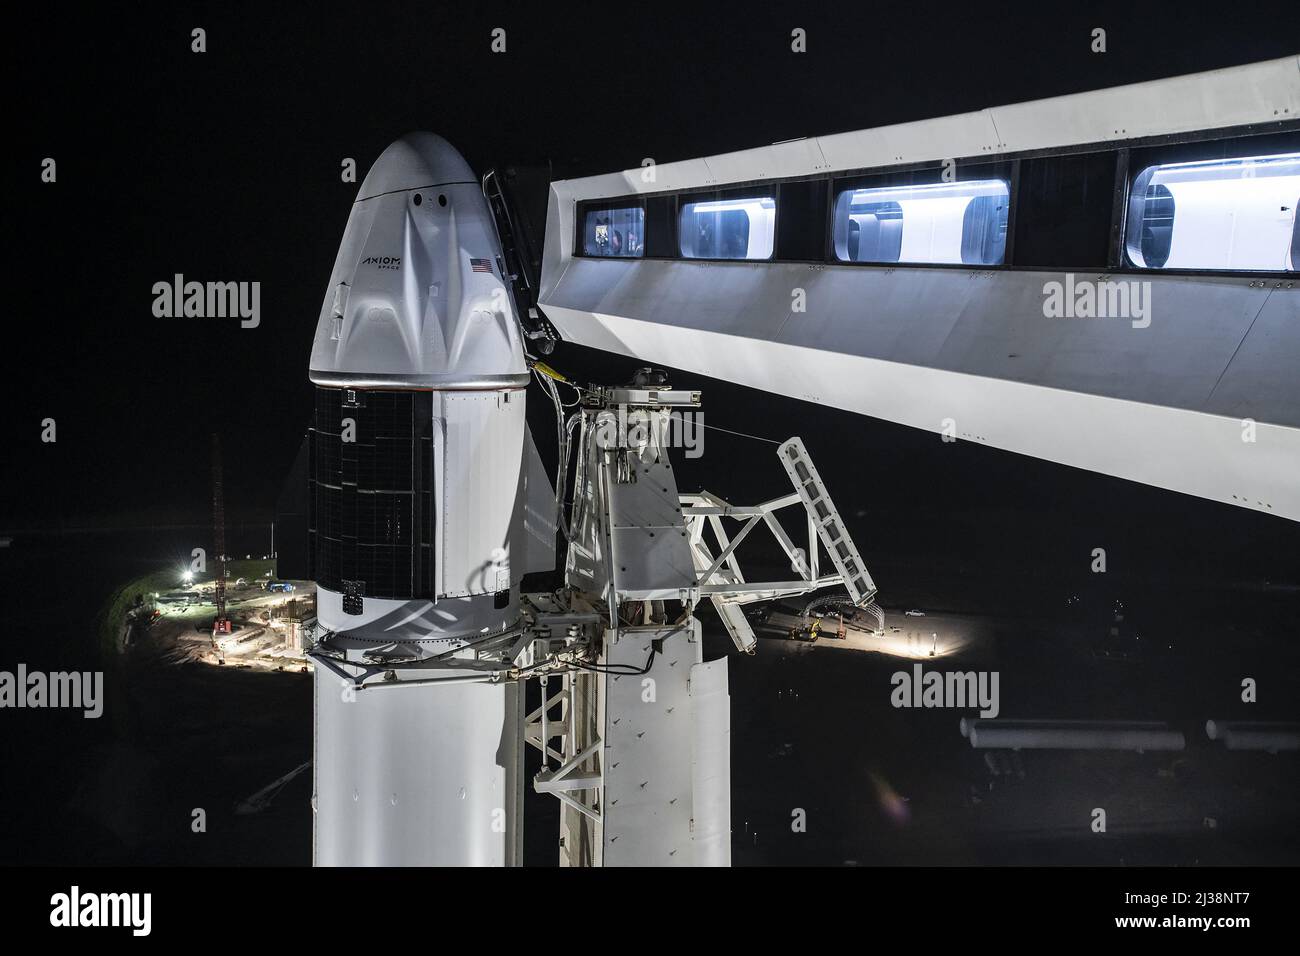 Les engins spatiaux Falcon 9 et Dragon de SpaceX sont verticaux dans le complexe historique Launch Complex 39A (LC-39A) du Kennedy Space Center de la NASA. SpaceX vise le vendredi 8 avril à lancer la mission Ax-1 d'Axiom Space à la Station spatiale internationale. L'équipage axe-1 de Michael López-Alegría, un astronaute à la retraite de la NASA; Larry Connor, un entrepreneur en immobilier et en technologie; Mark Pathy, un homme d'affaires canadien; et Eytan Stibbe, un entrepreneur israélien et ancien pilote de chasse à réaction, passeront dix jours dans le laboratoire en orbite. La mission Ax-1 d'Axiom Space est la première mission de vol spatial humain entièrement privée Banque D'Images